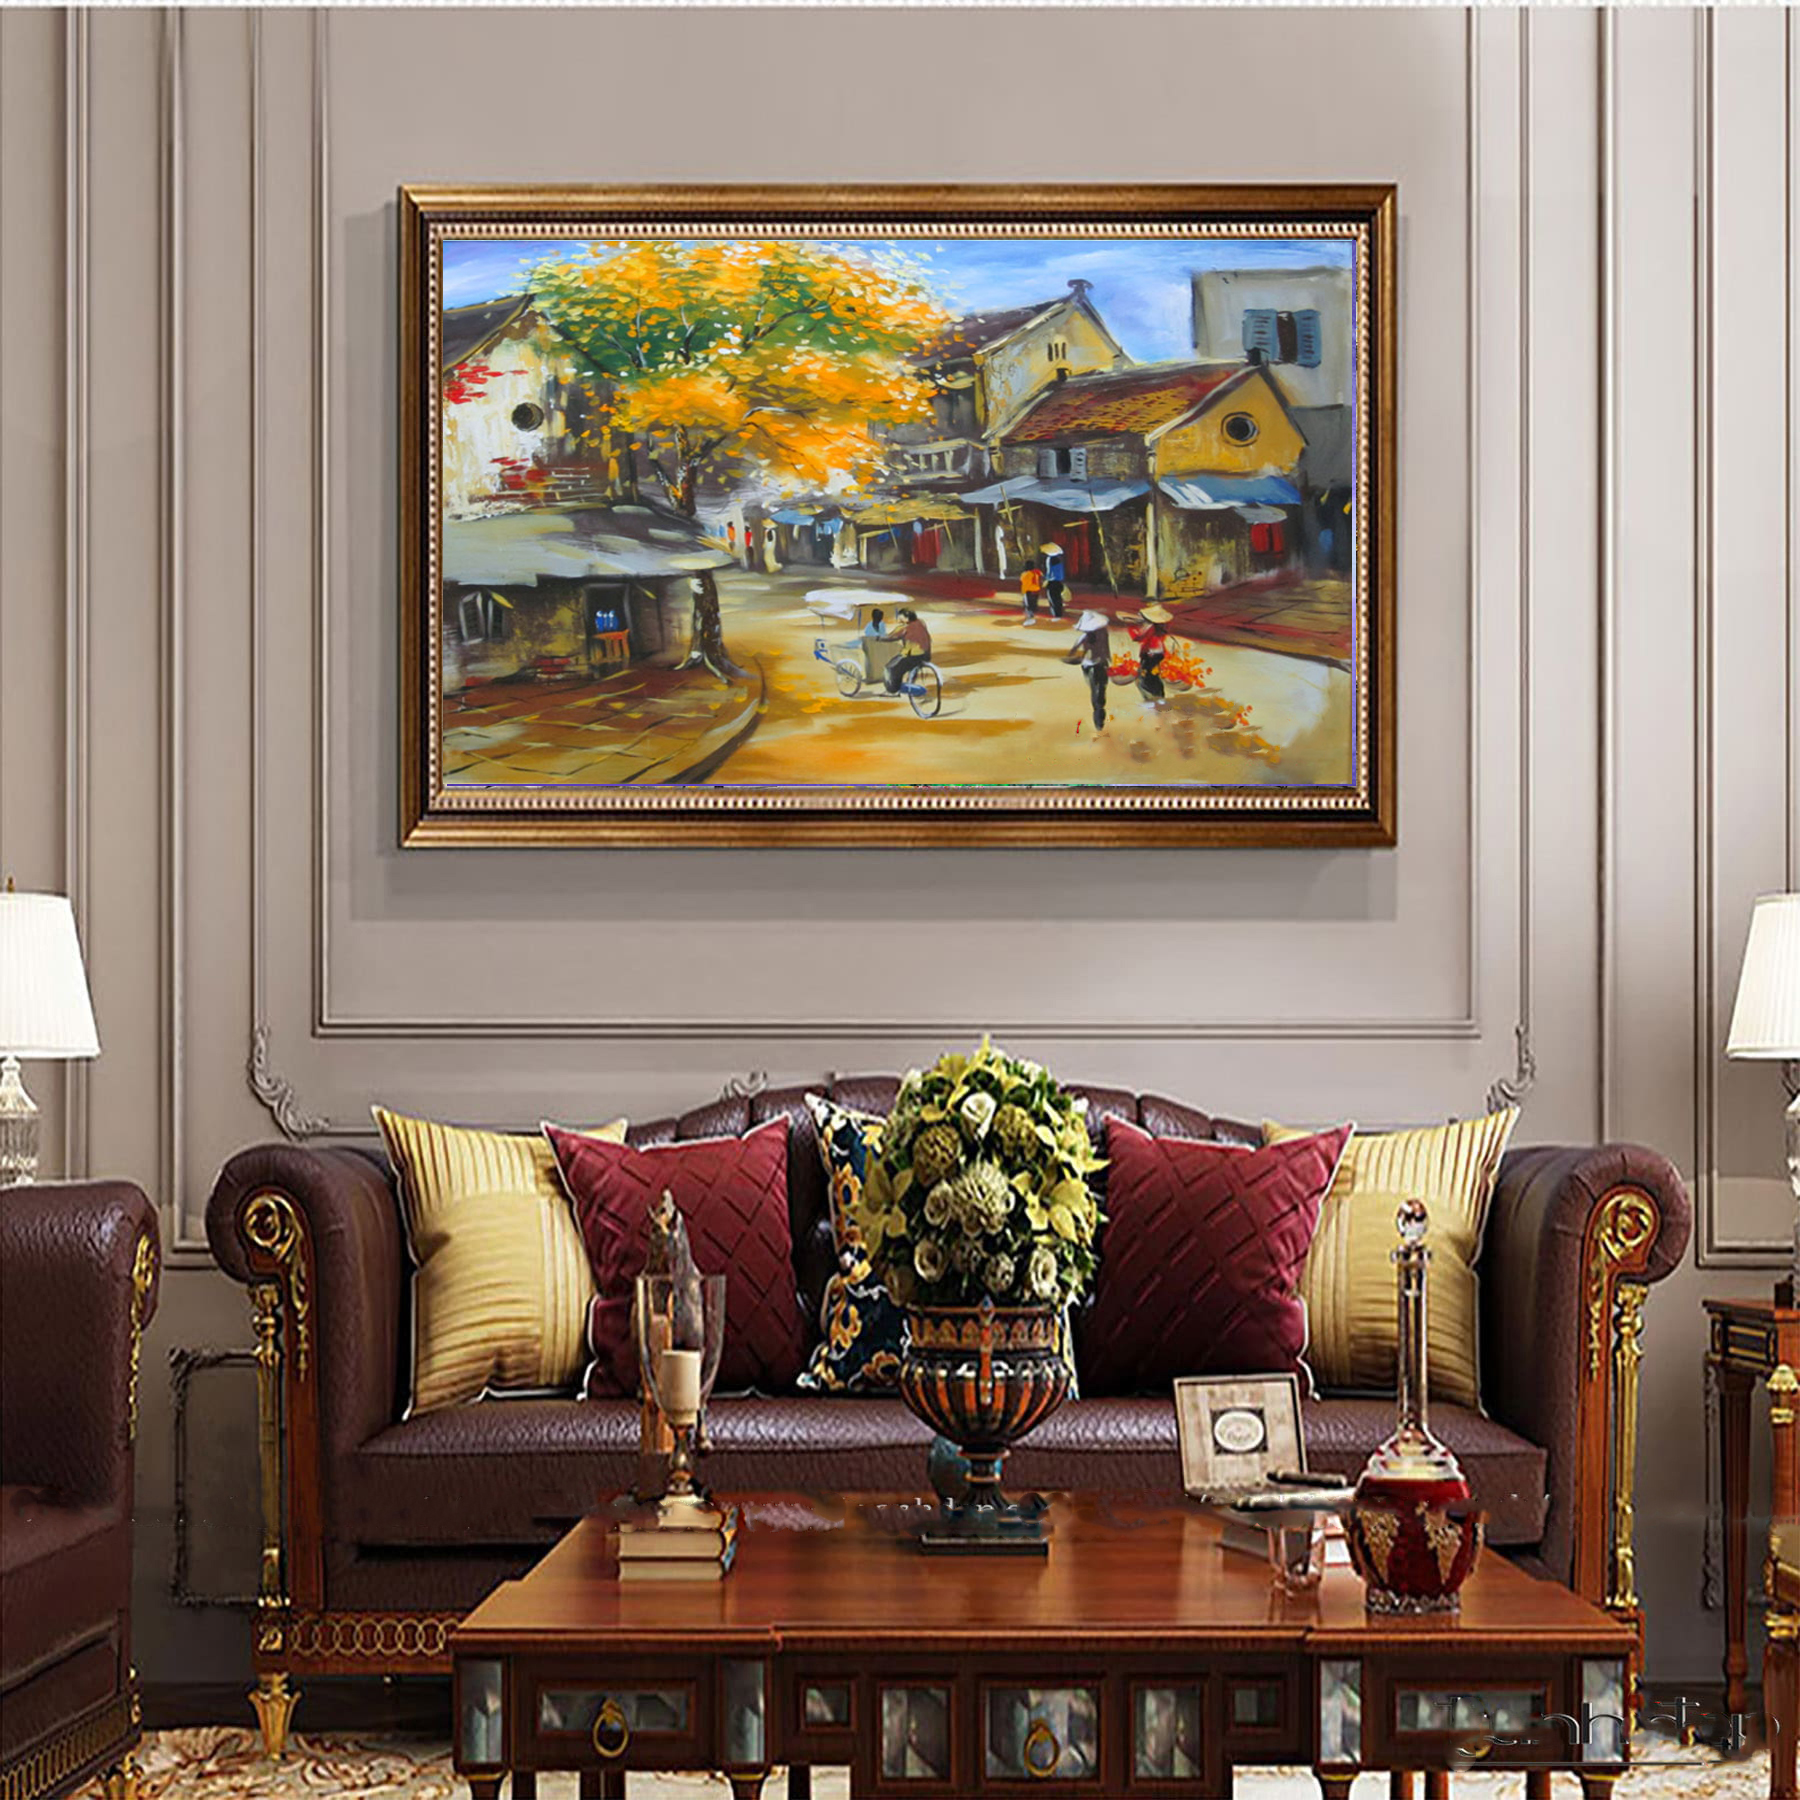 Tranh phố cổ - tranh vẽ tay - tranh sơn dầu - tranh treo phòng khách